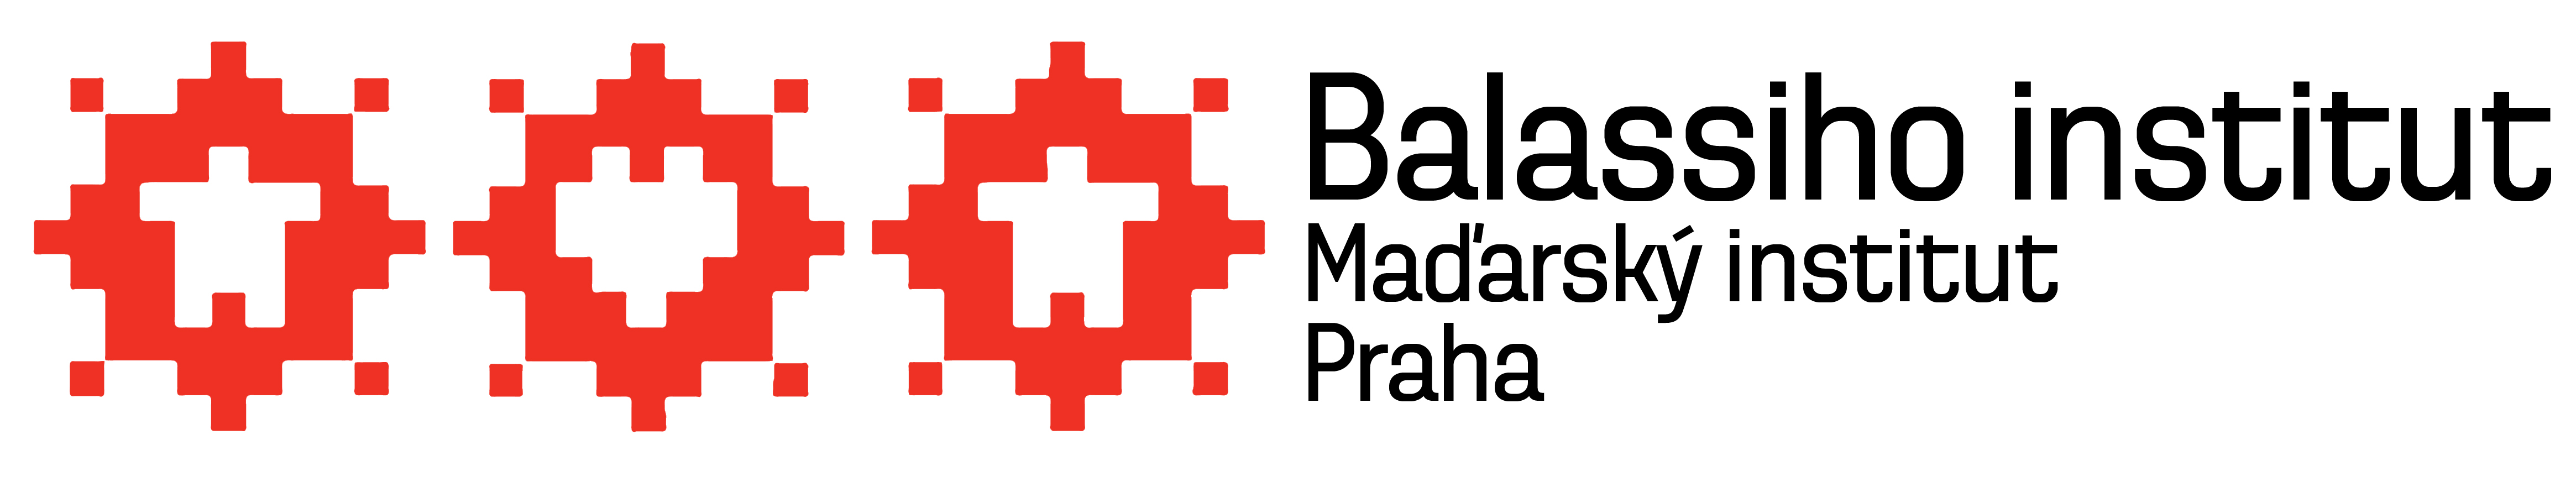 Balassiho_institut